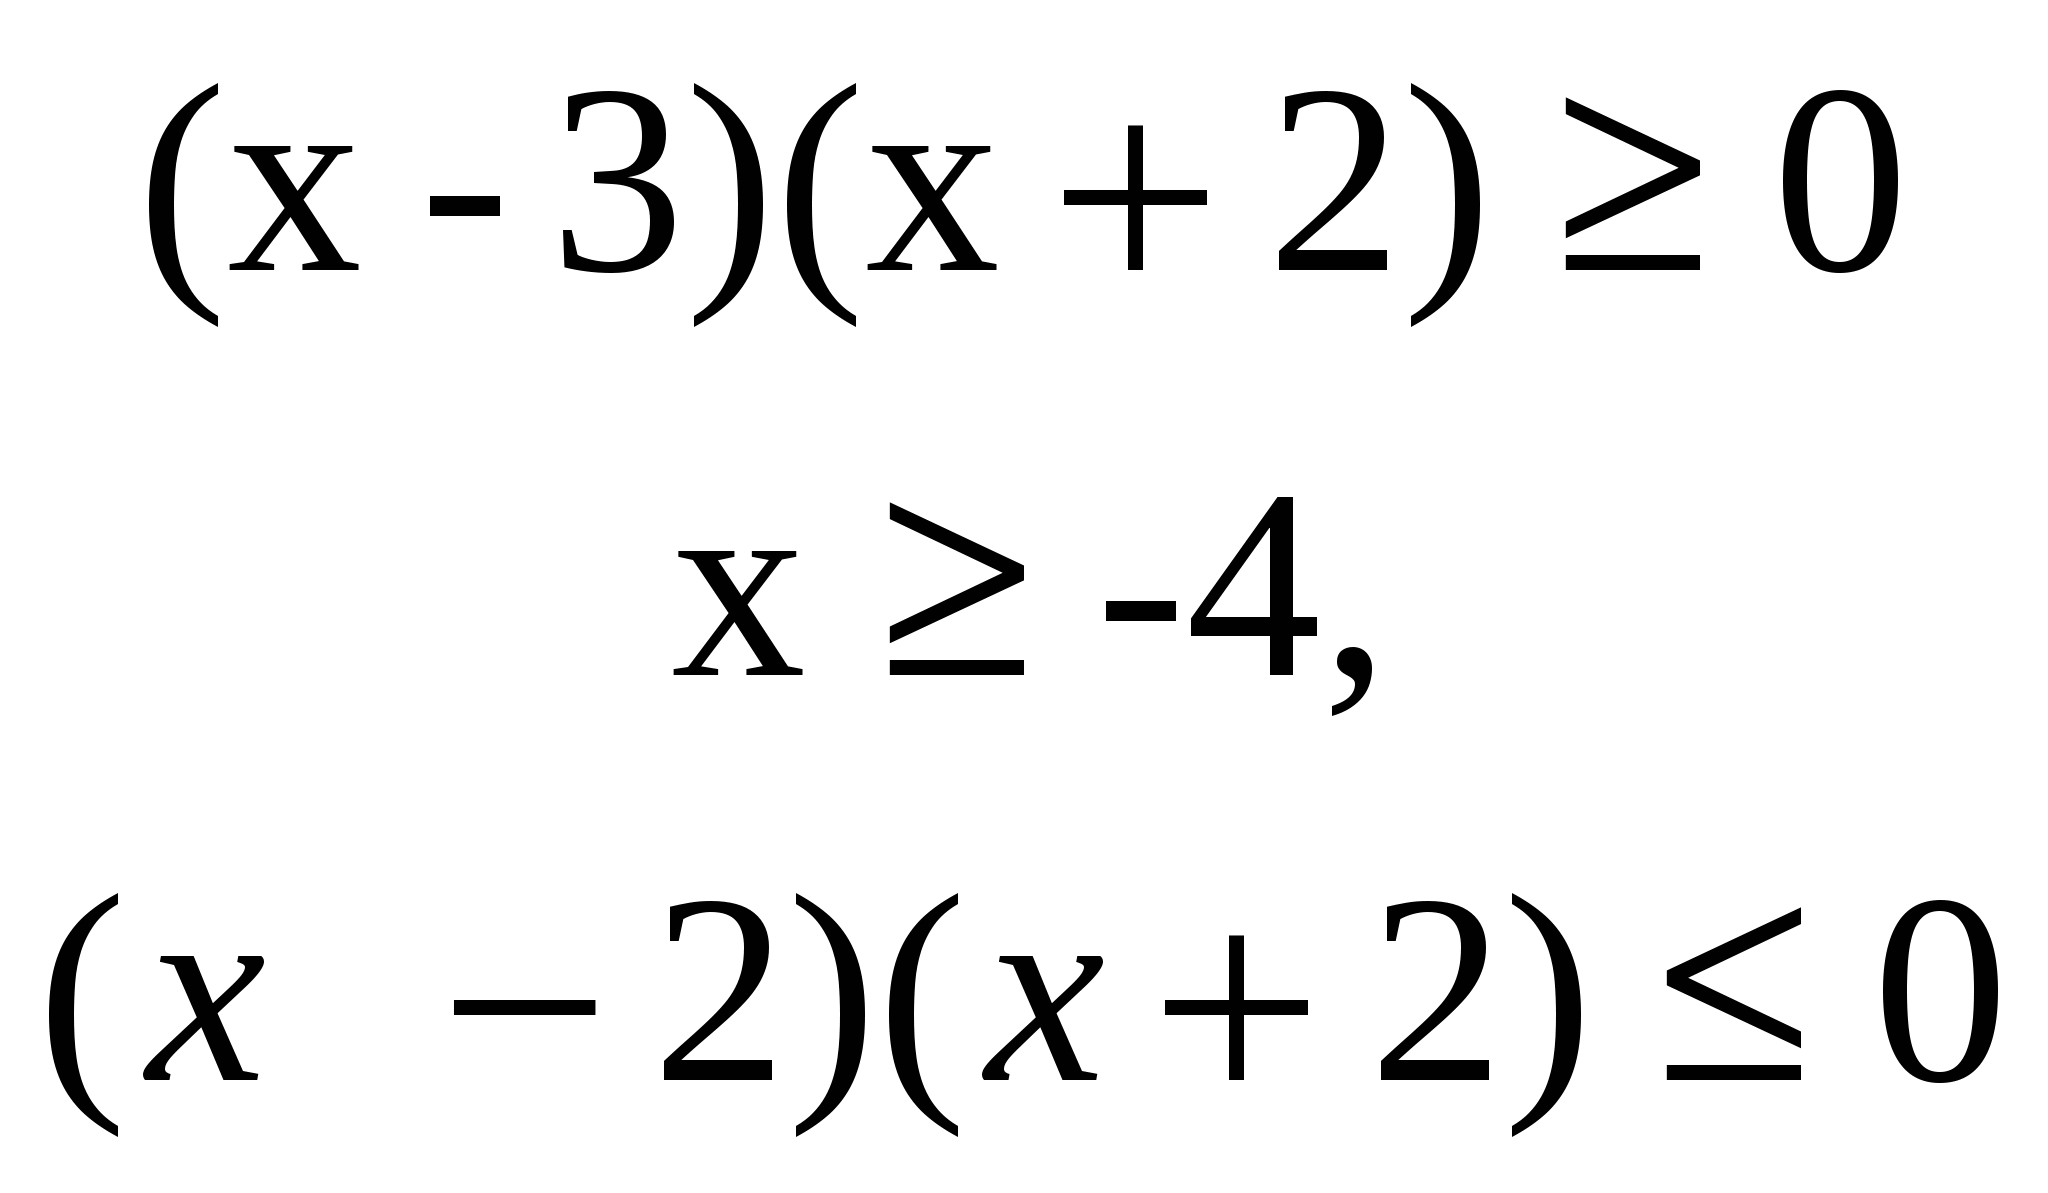 Решение неравенств, содержащих обратные тригонометрические функции.